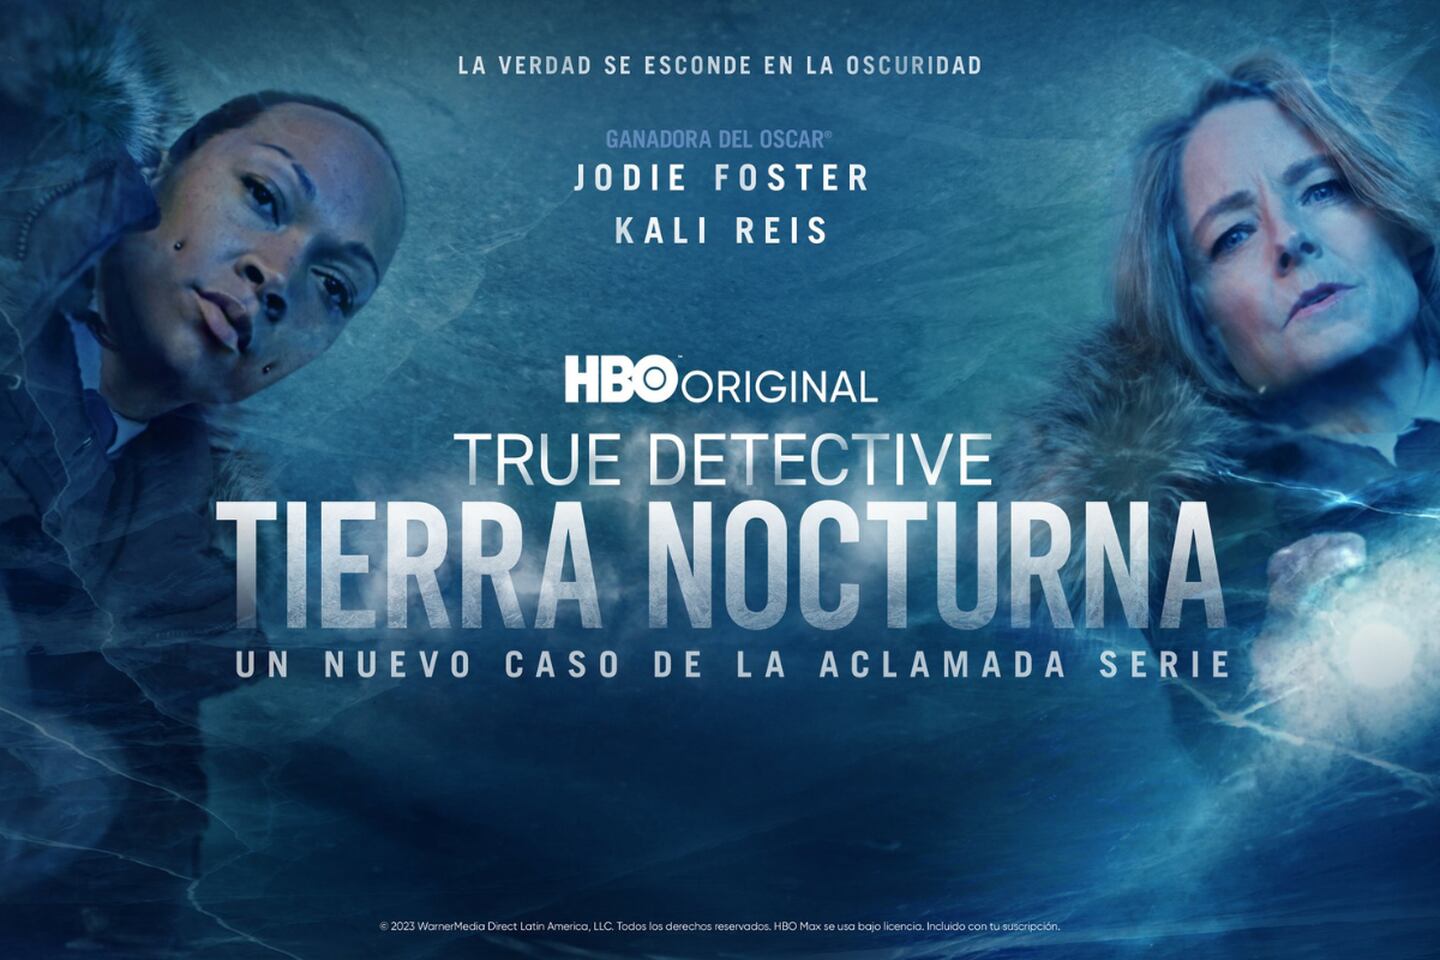 Jodie Foster y Kali Reis son las dos protagonistas en la serie de HBO, "True Detective: Tierra Nocturna".